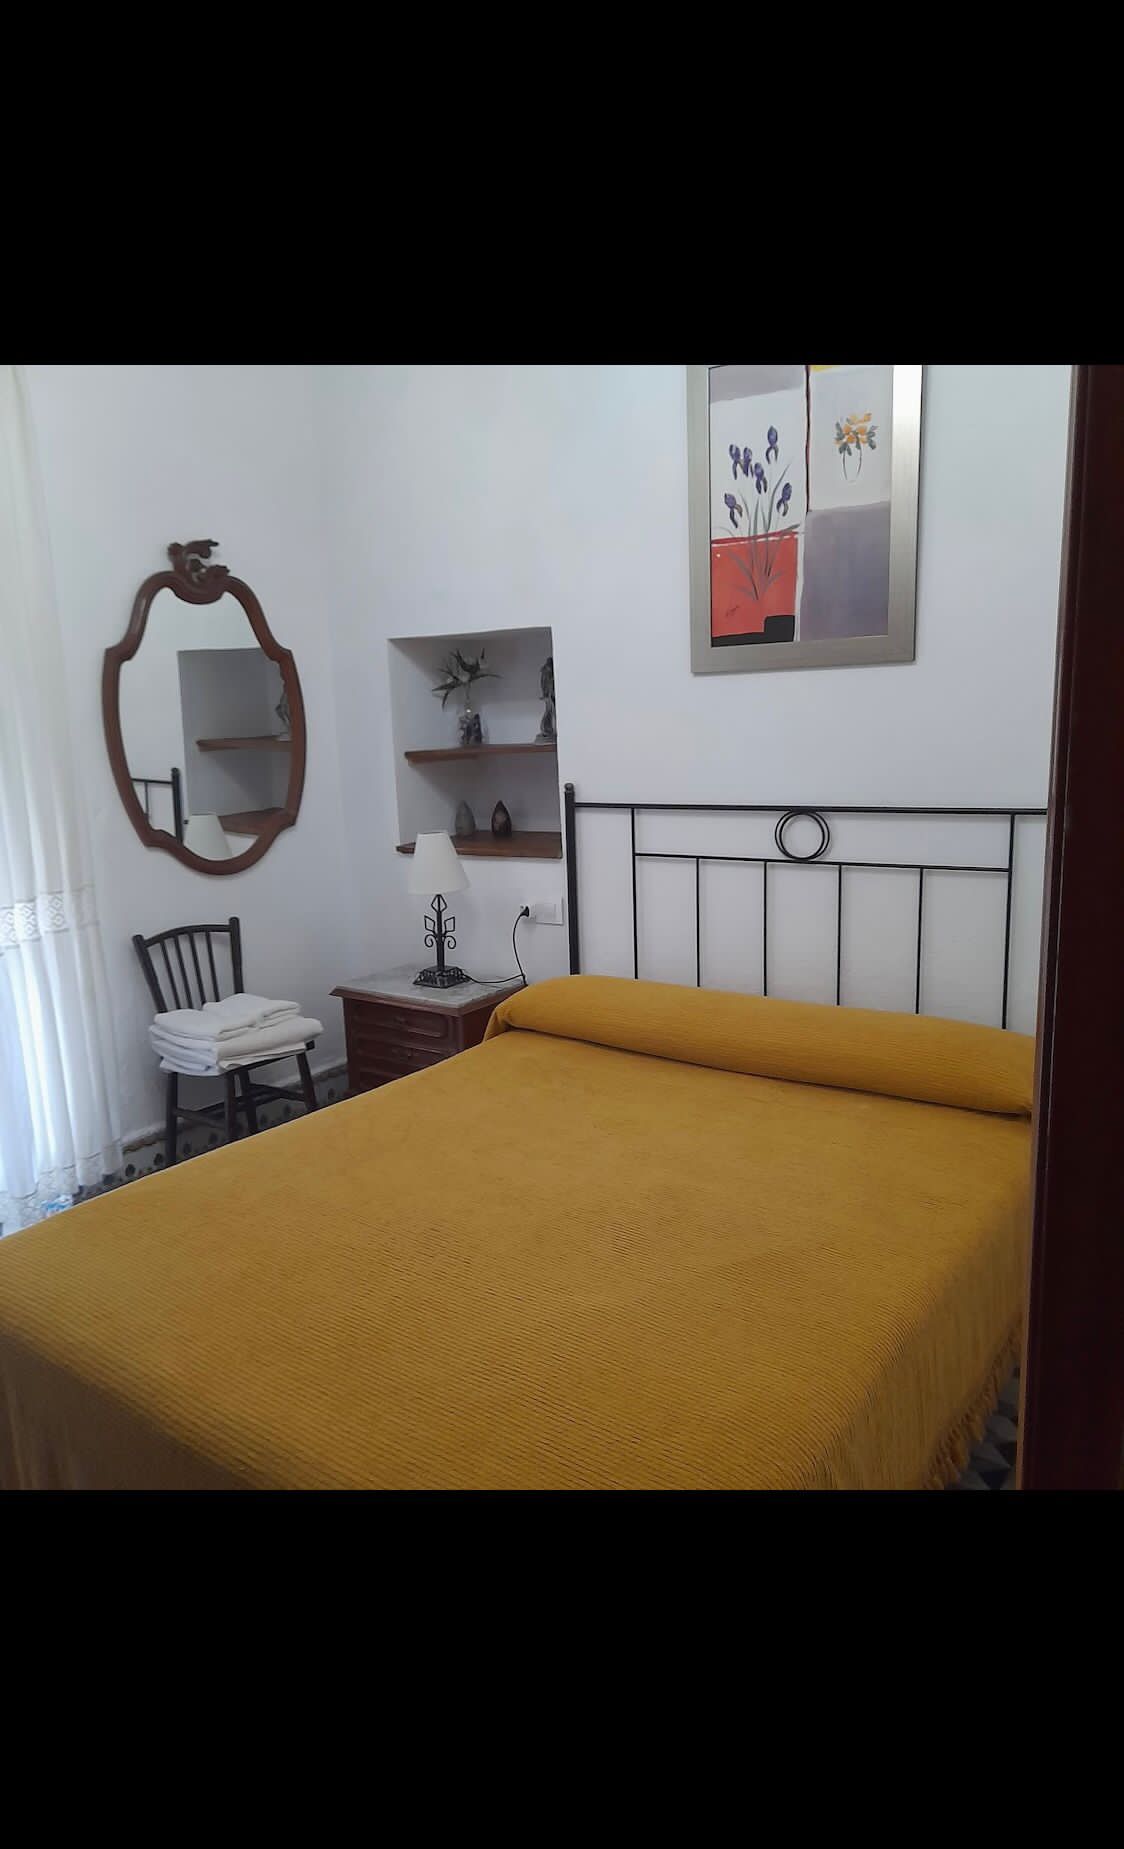 house-for-rent-in-Huelva-bedroom